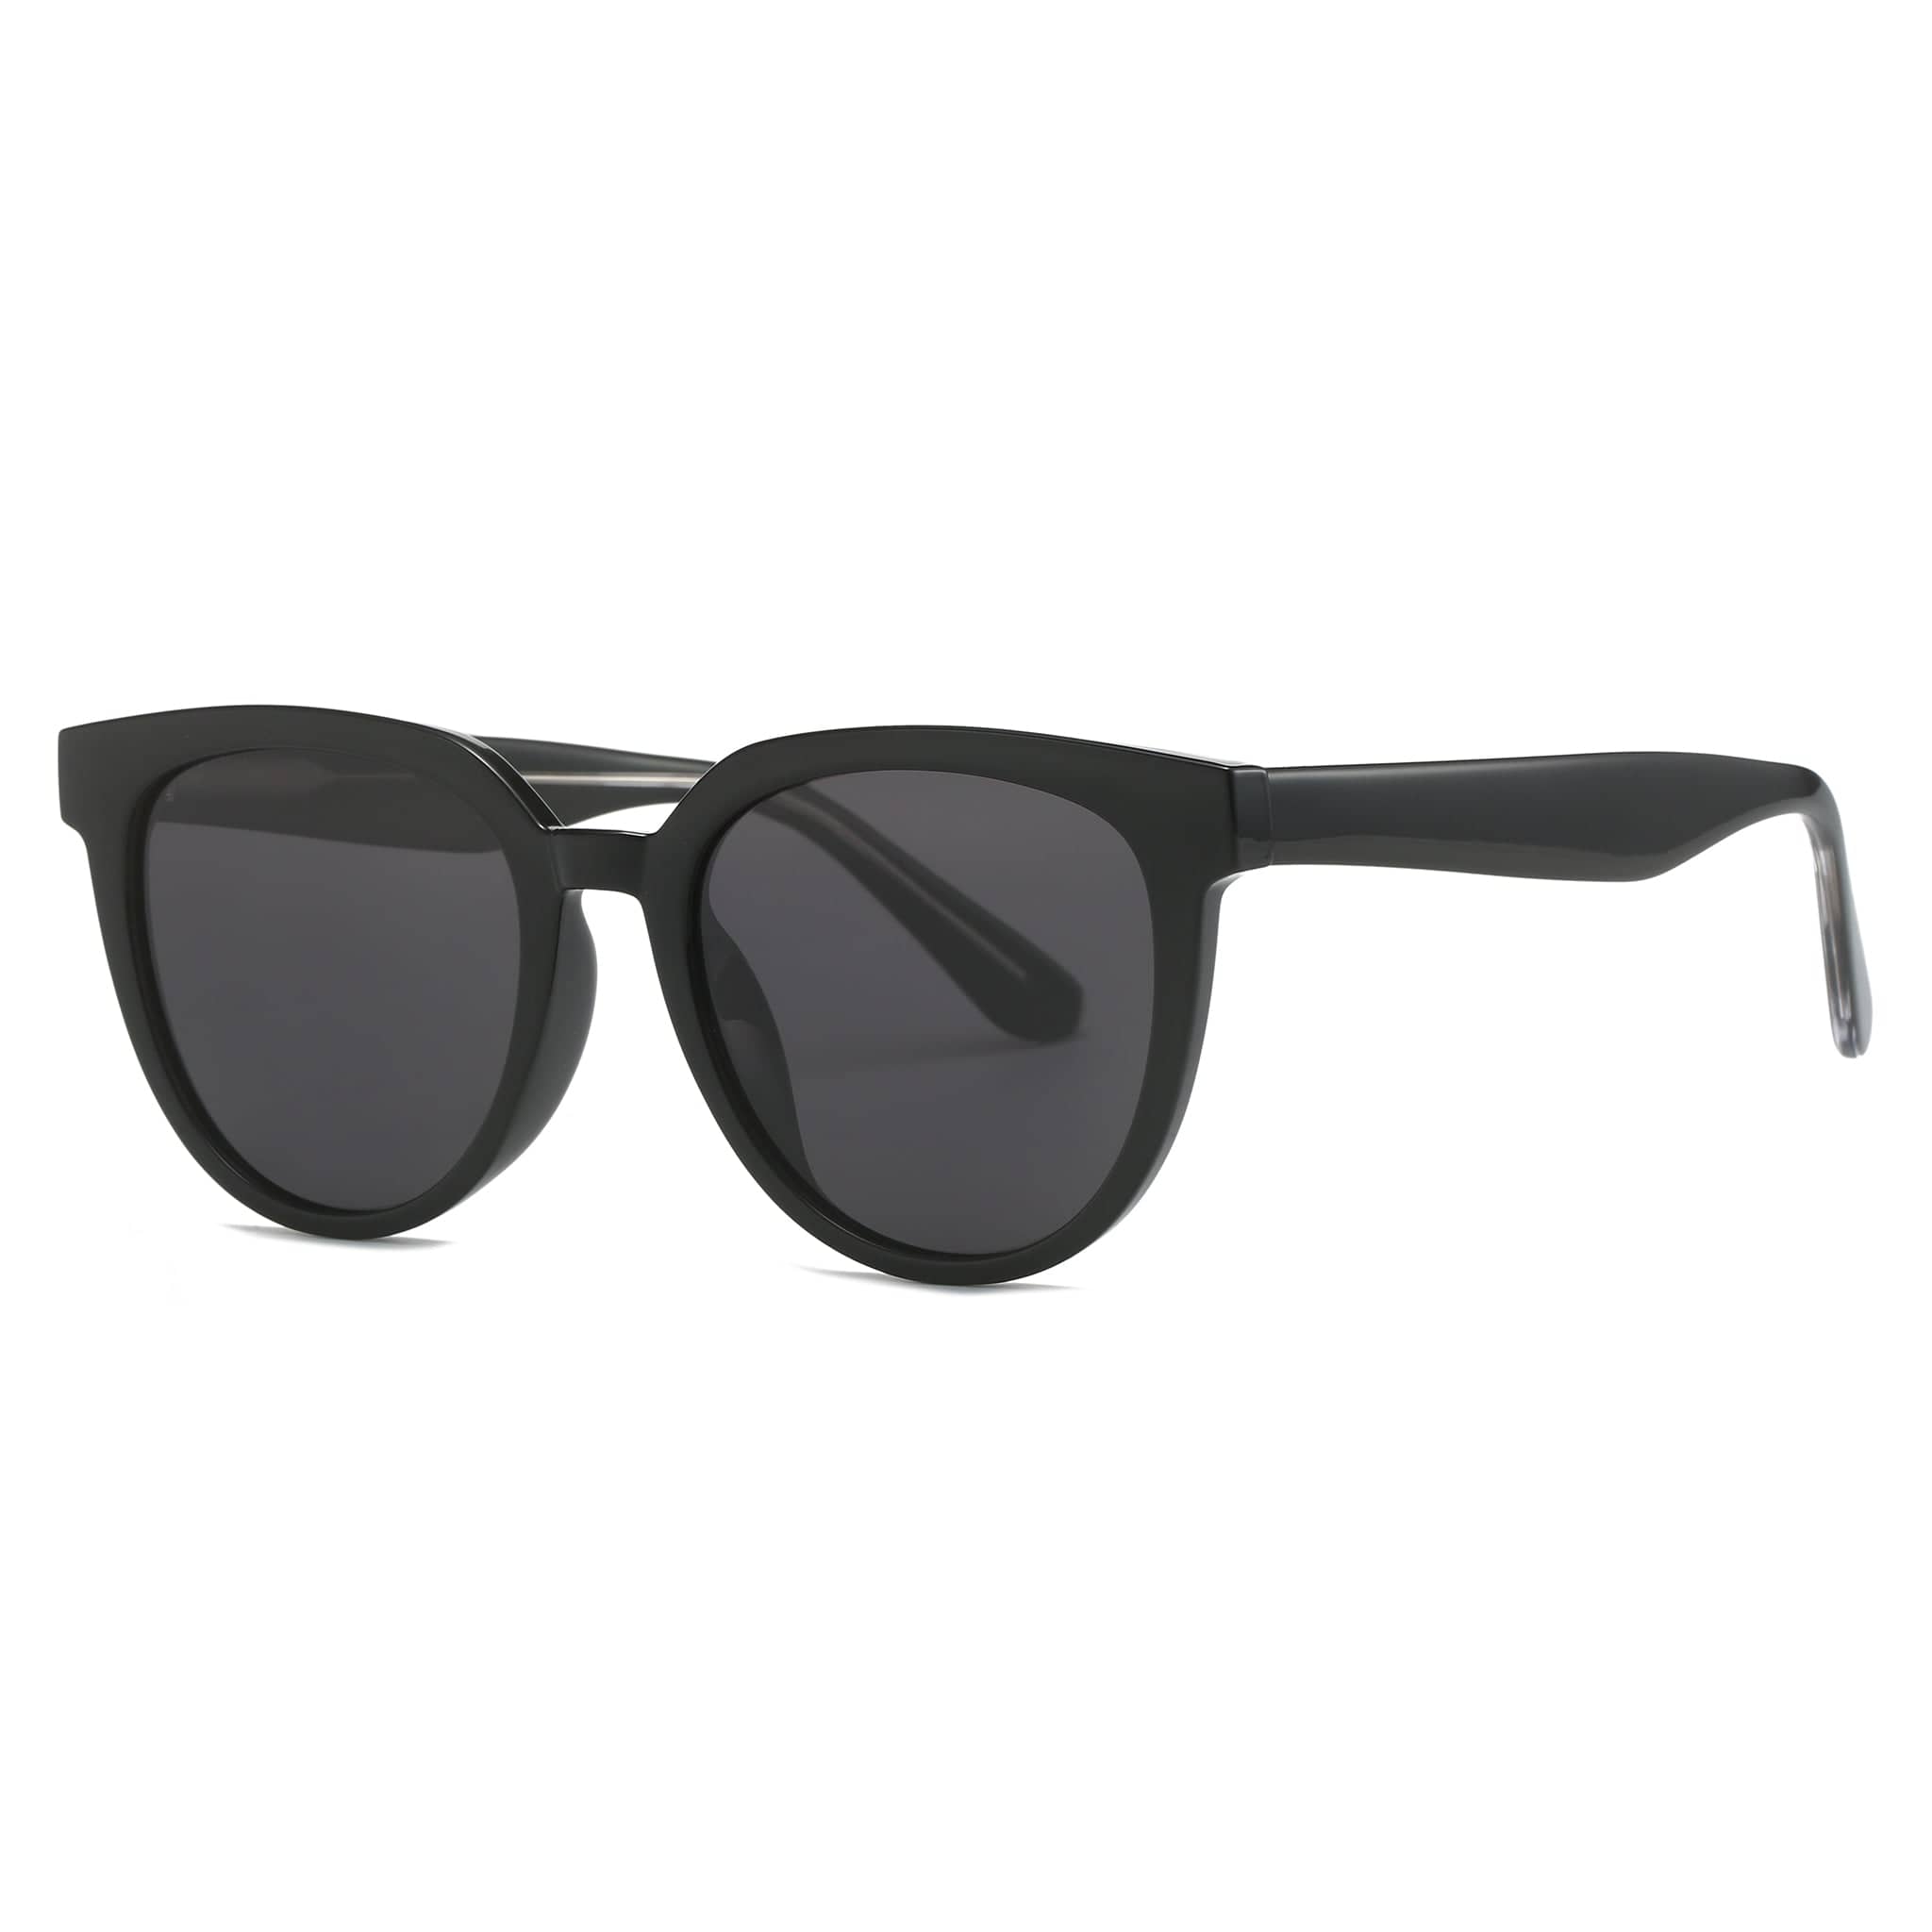 GIUSTIZIERI VECCHI Sunglasses Small / Black Jetsetter Wayfarer Uno